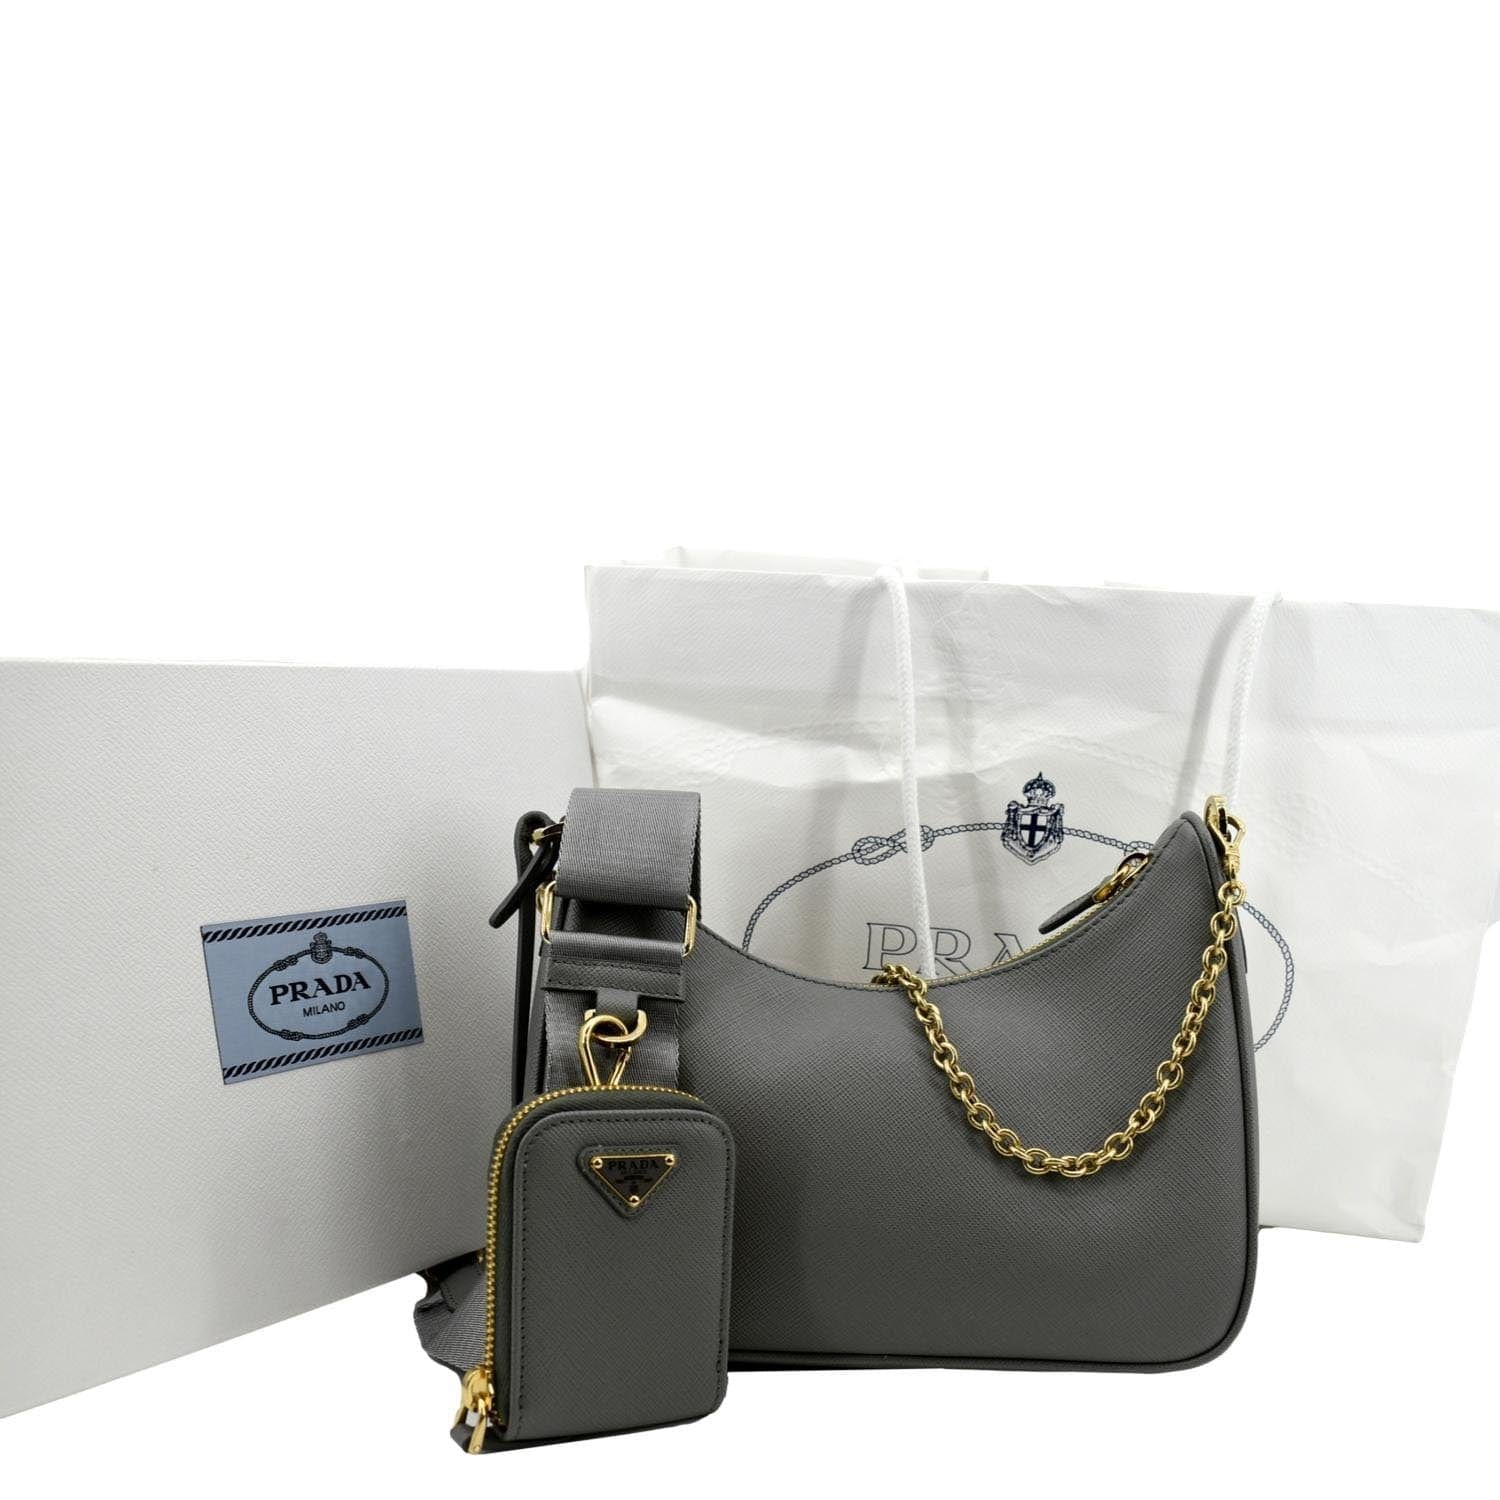 Prada Re-Edition 2005 Saffiano Leather Shoulder Bag